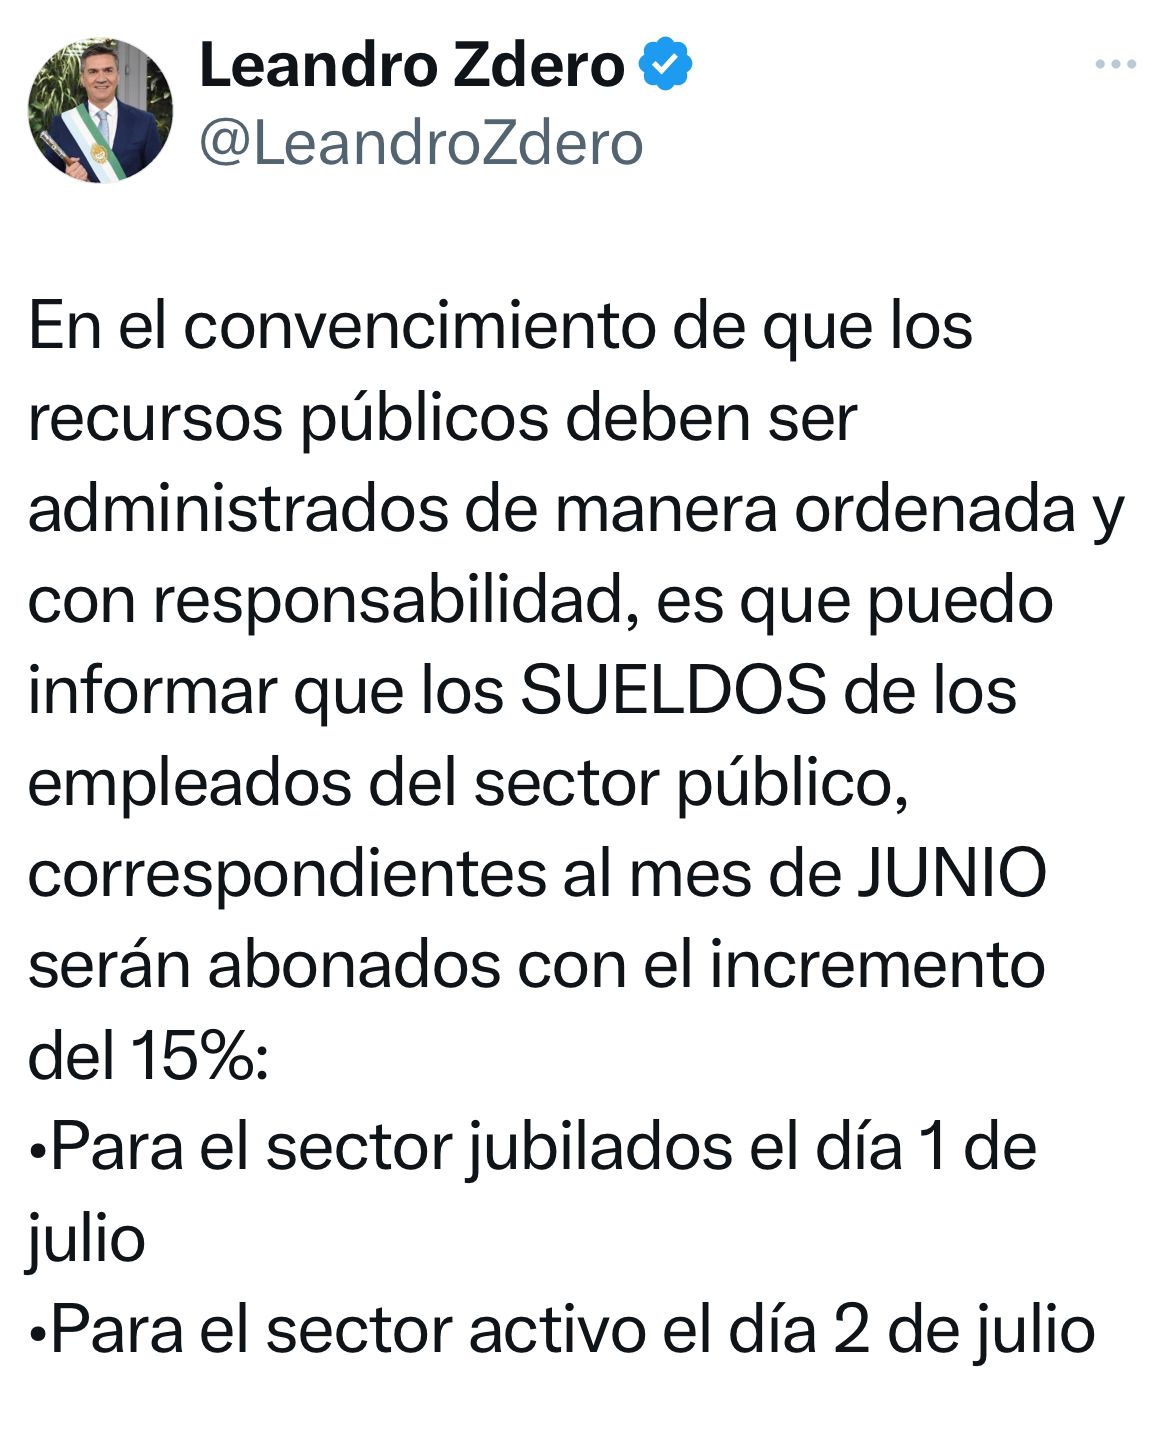 *EL GOBERNADOR ZDERO ANUNCIÓ EL CRONOGRAMA DE PAGOS DEL MES DE JUNIO*